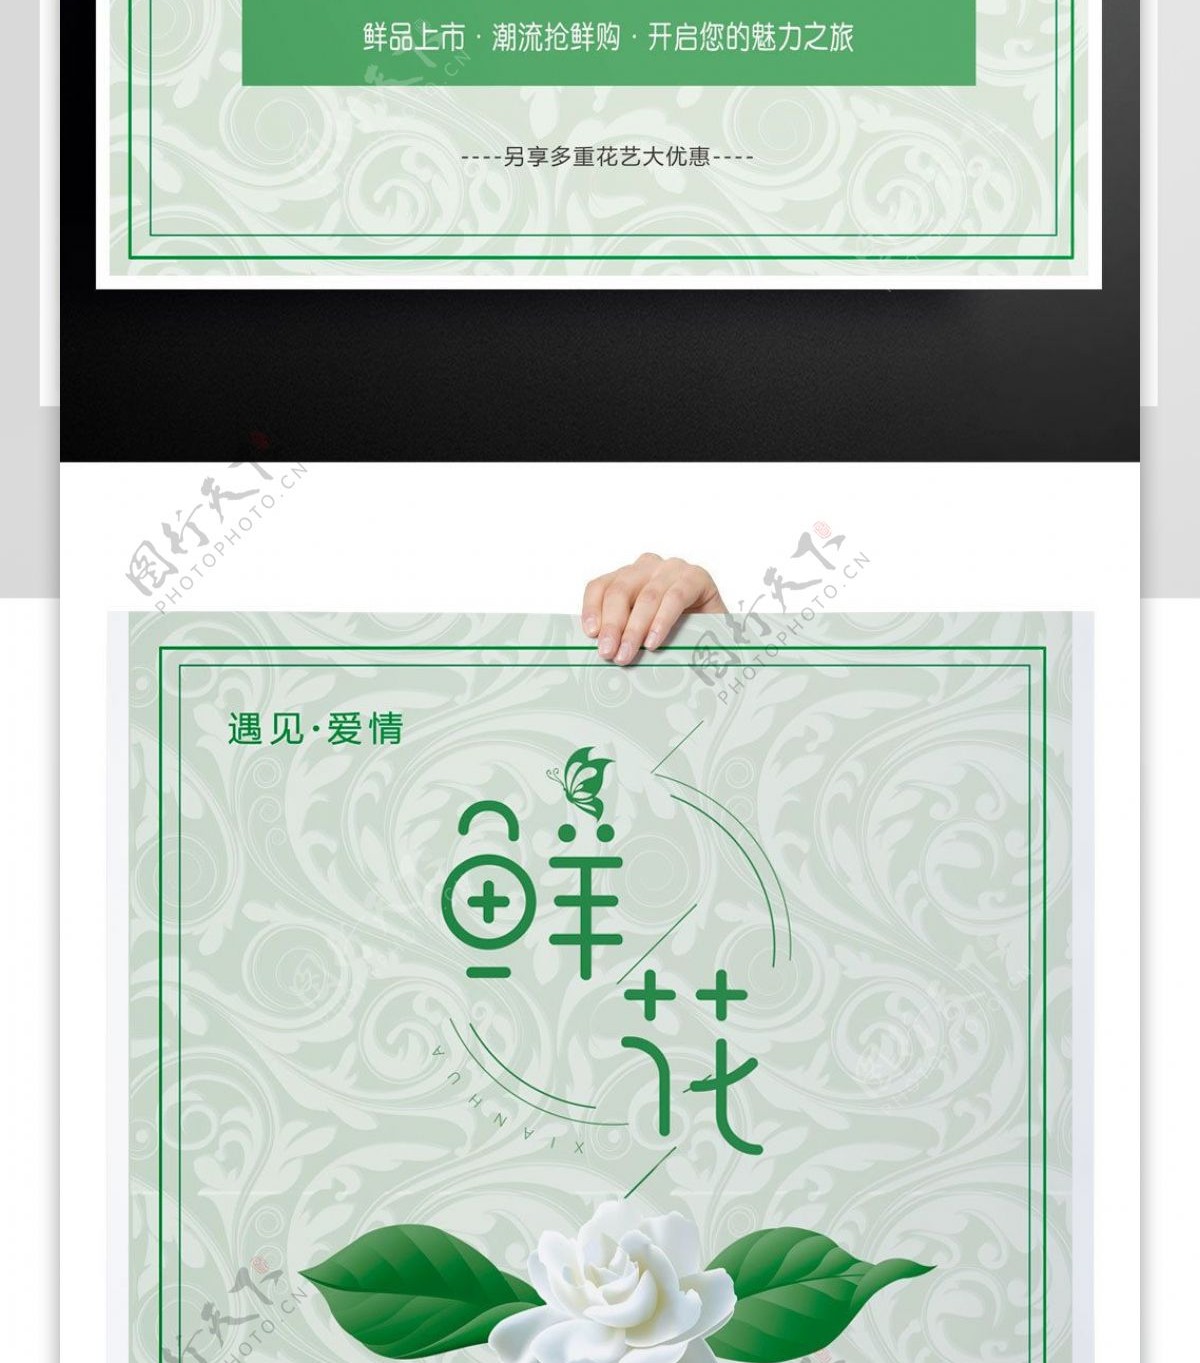 2017绿色清新花店促销活动海报模版